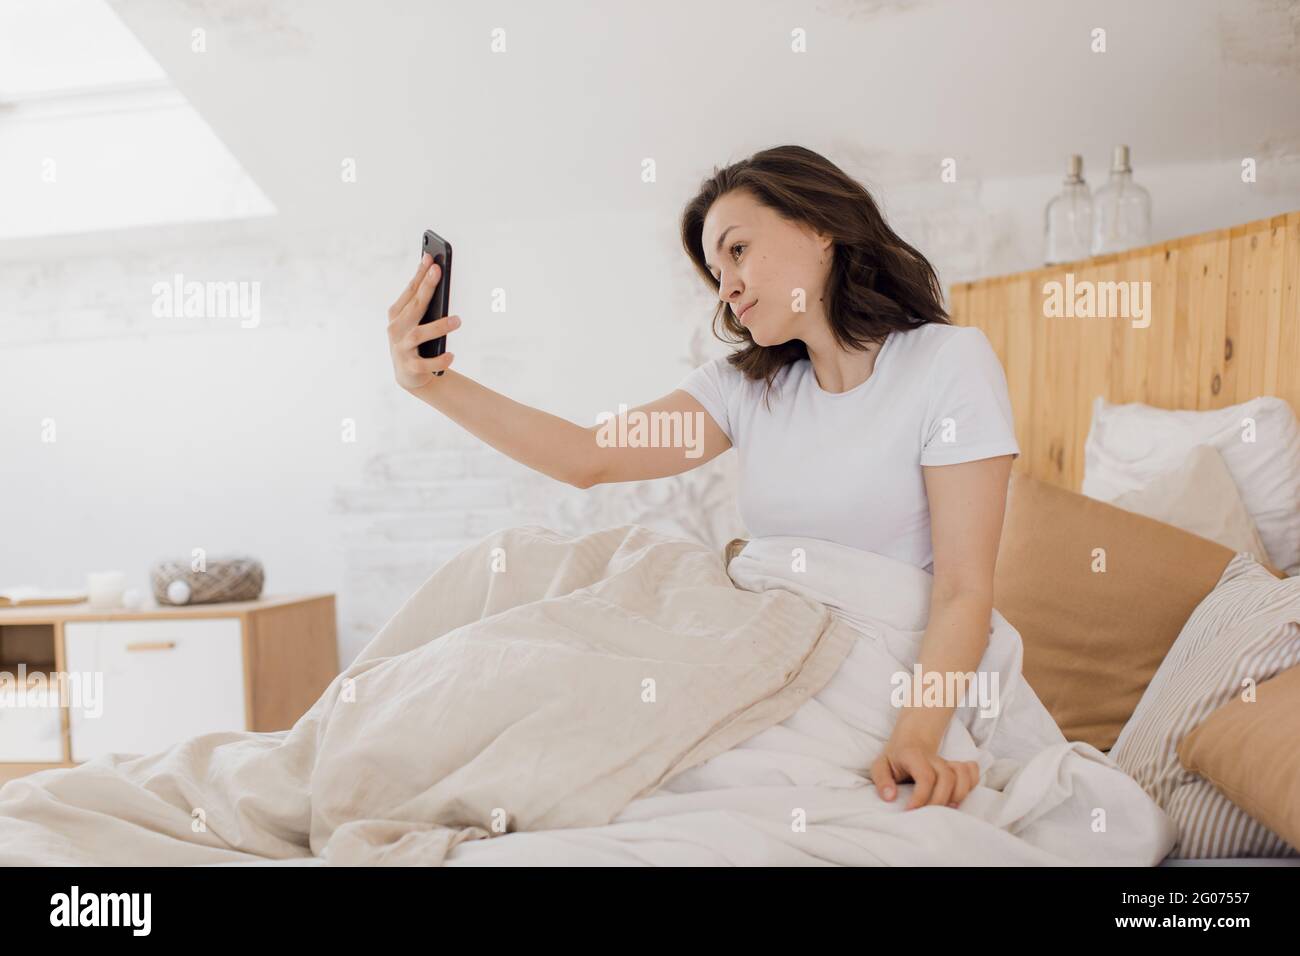 Gros plan d'une femme excitée qui rit, tient un smartphone, prend un selfie, s'amuse avec un gadget, s'allonger sur le lit, profiter de son temps libre Banque D'Images